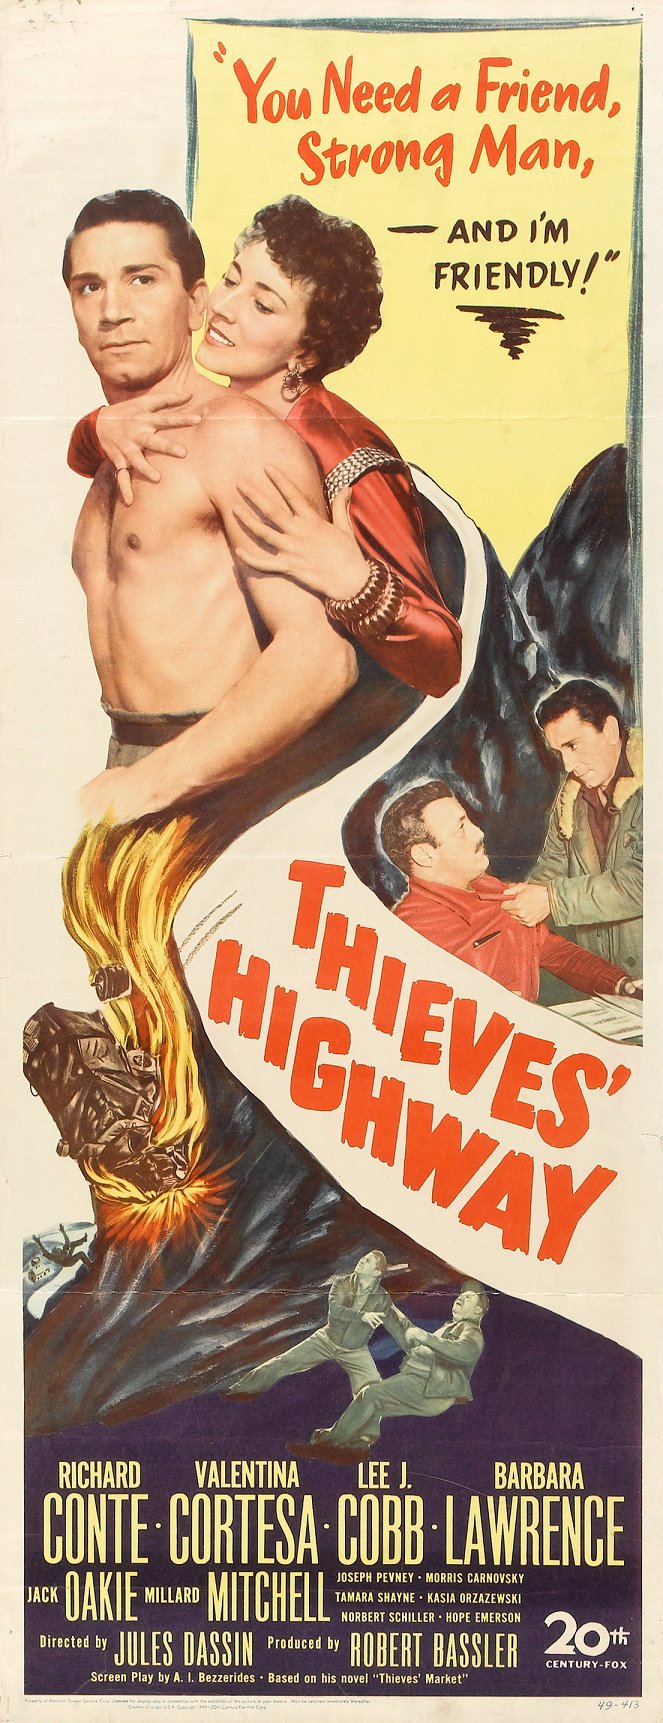 Thieves' Highway - Cartazes